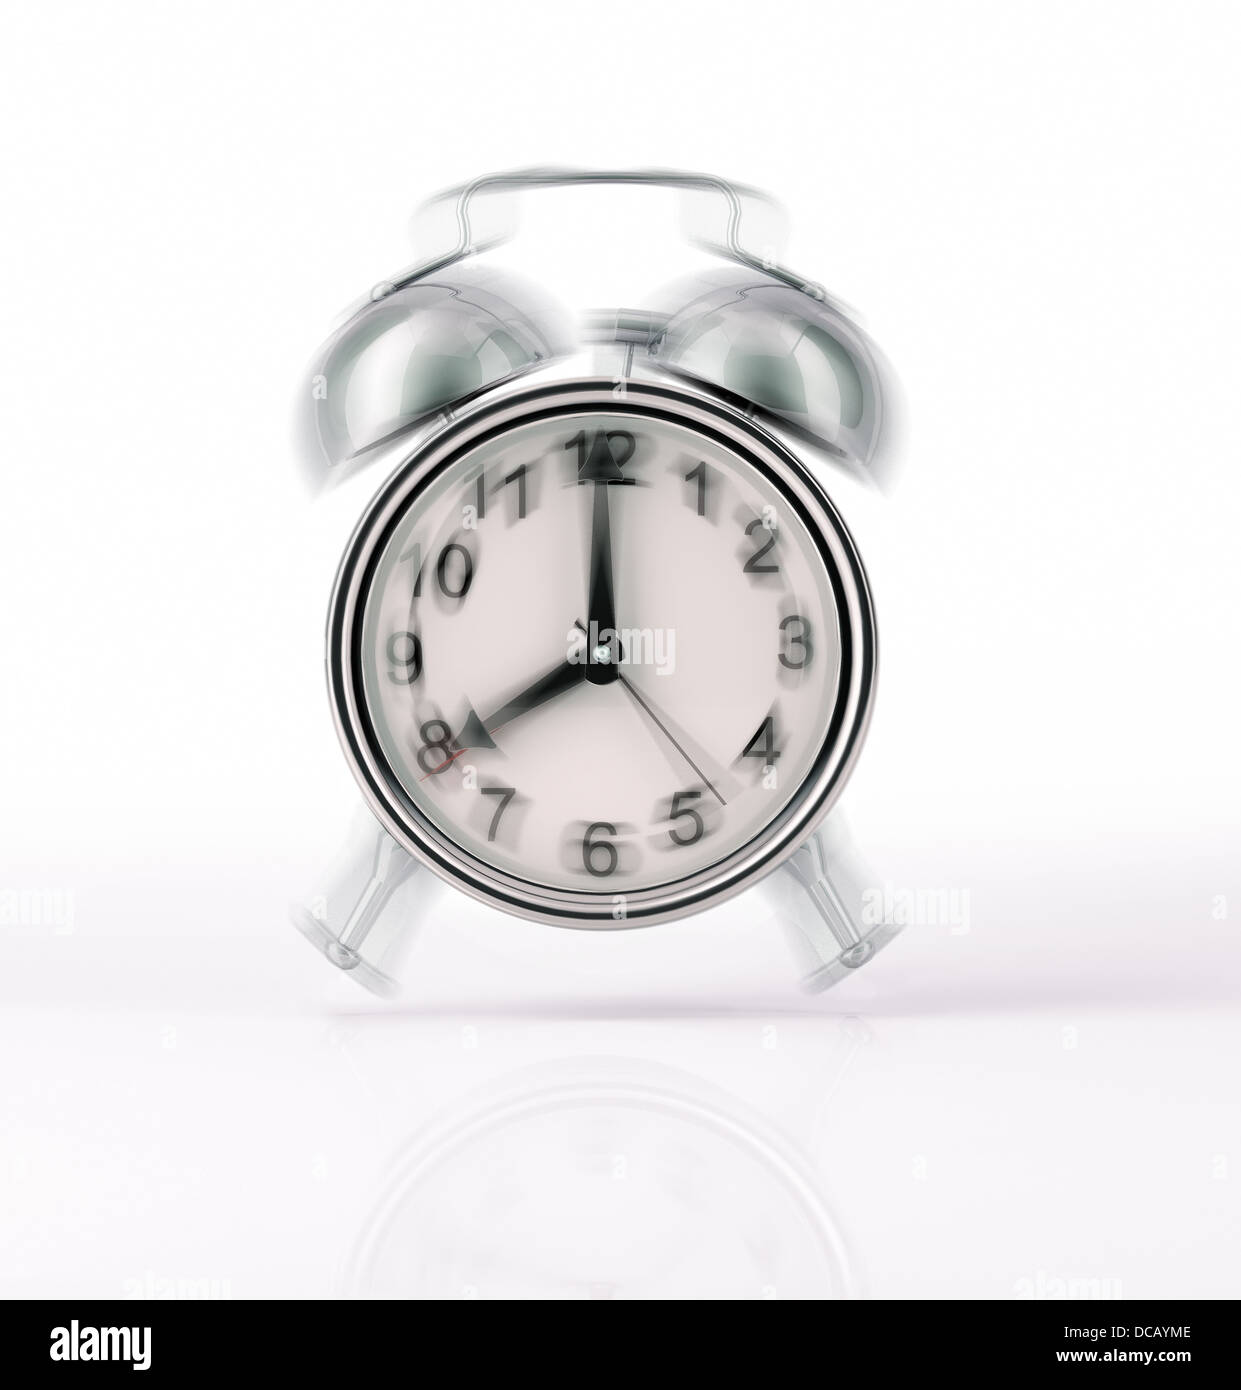 Reloj despertador clásico timbre cromado, con efecto de movimiento. Vista frontal sobre fondo blanco, con una ligera reflexión sobre la superficie Foto de stock